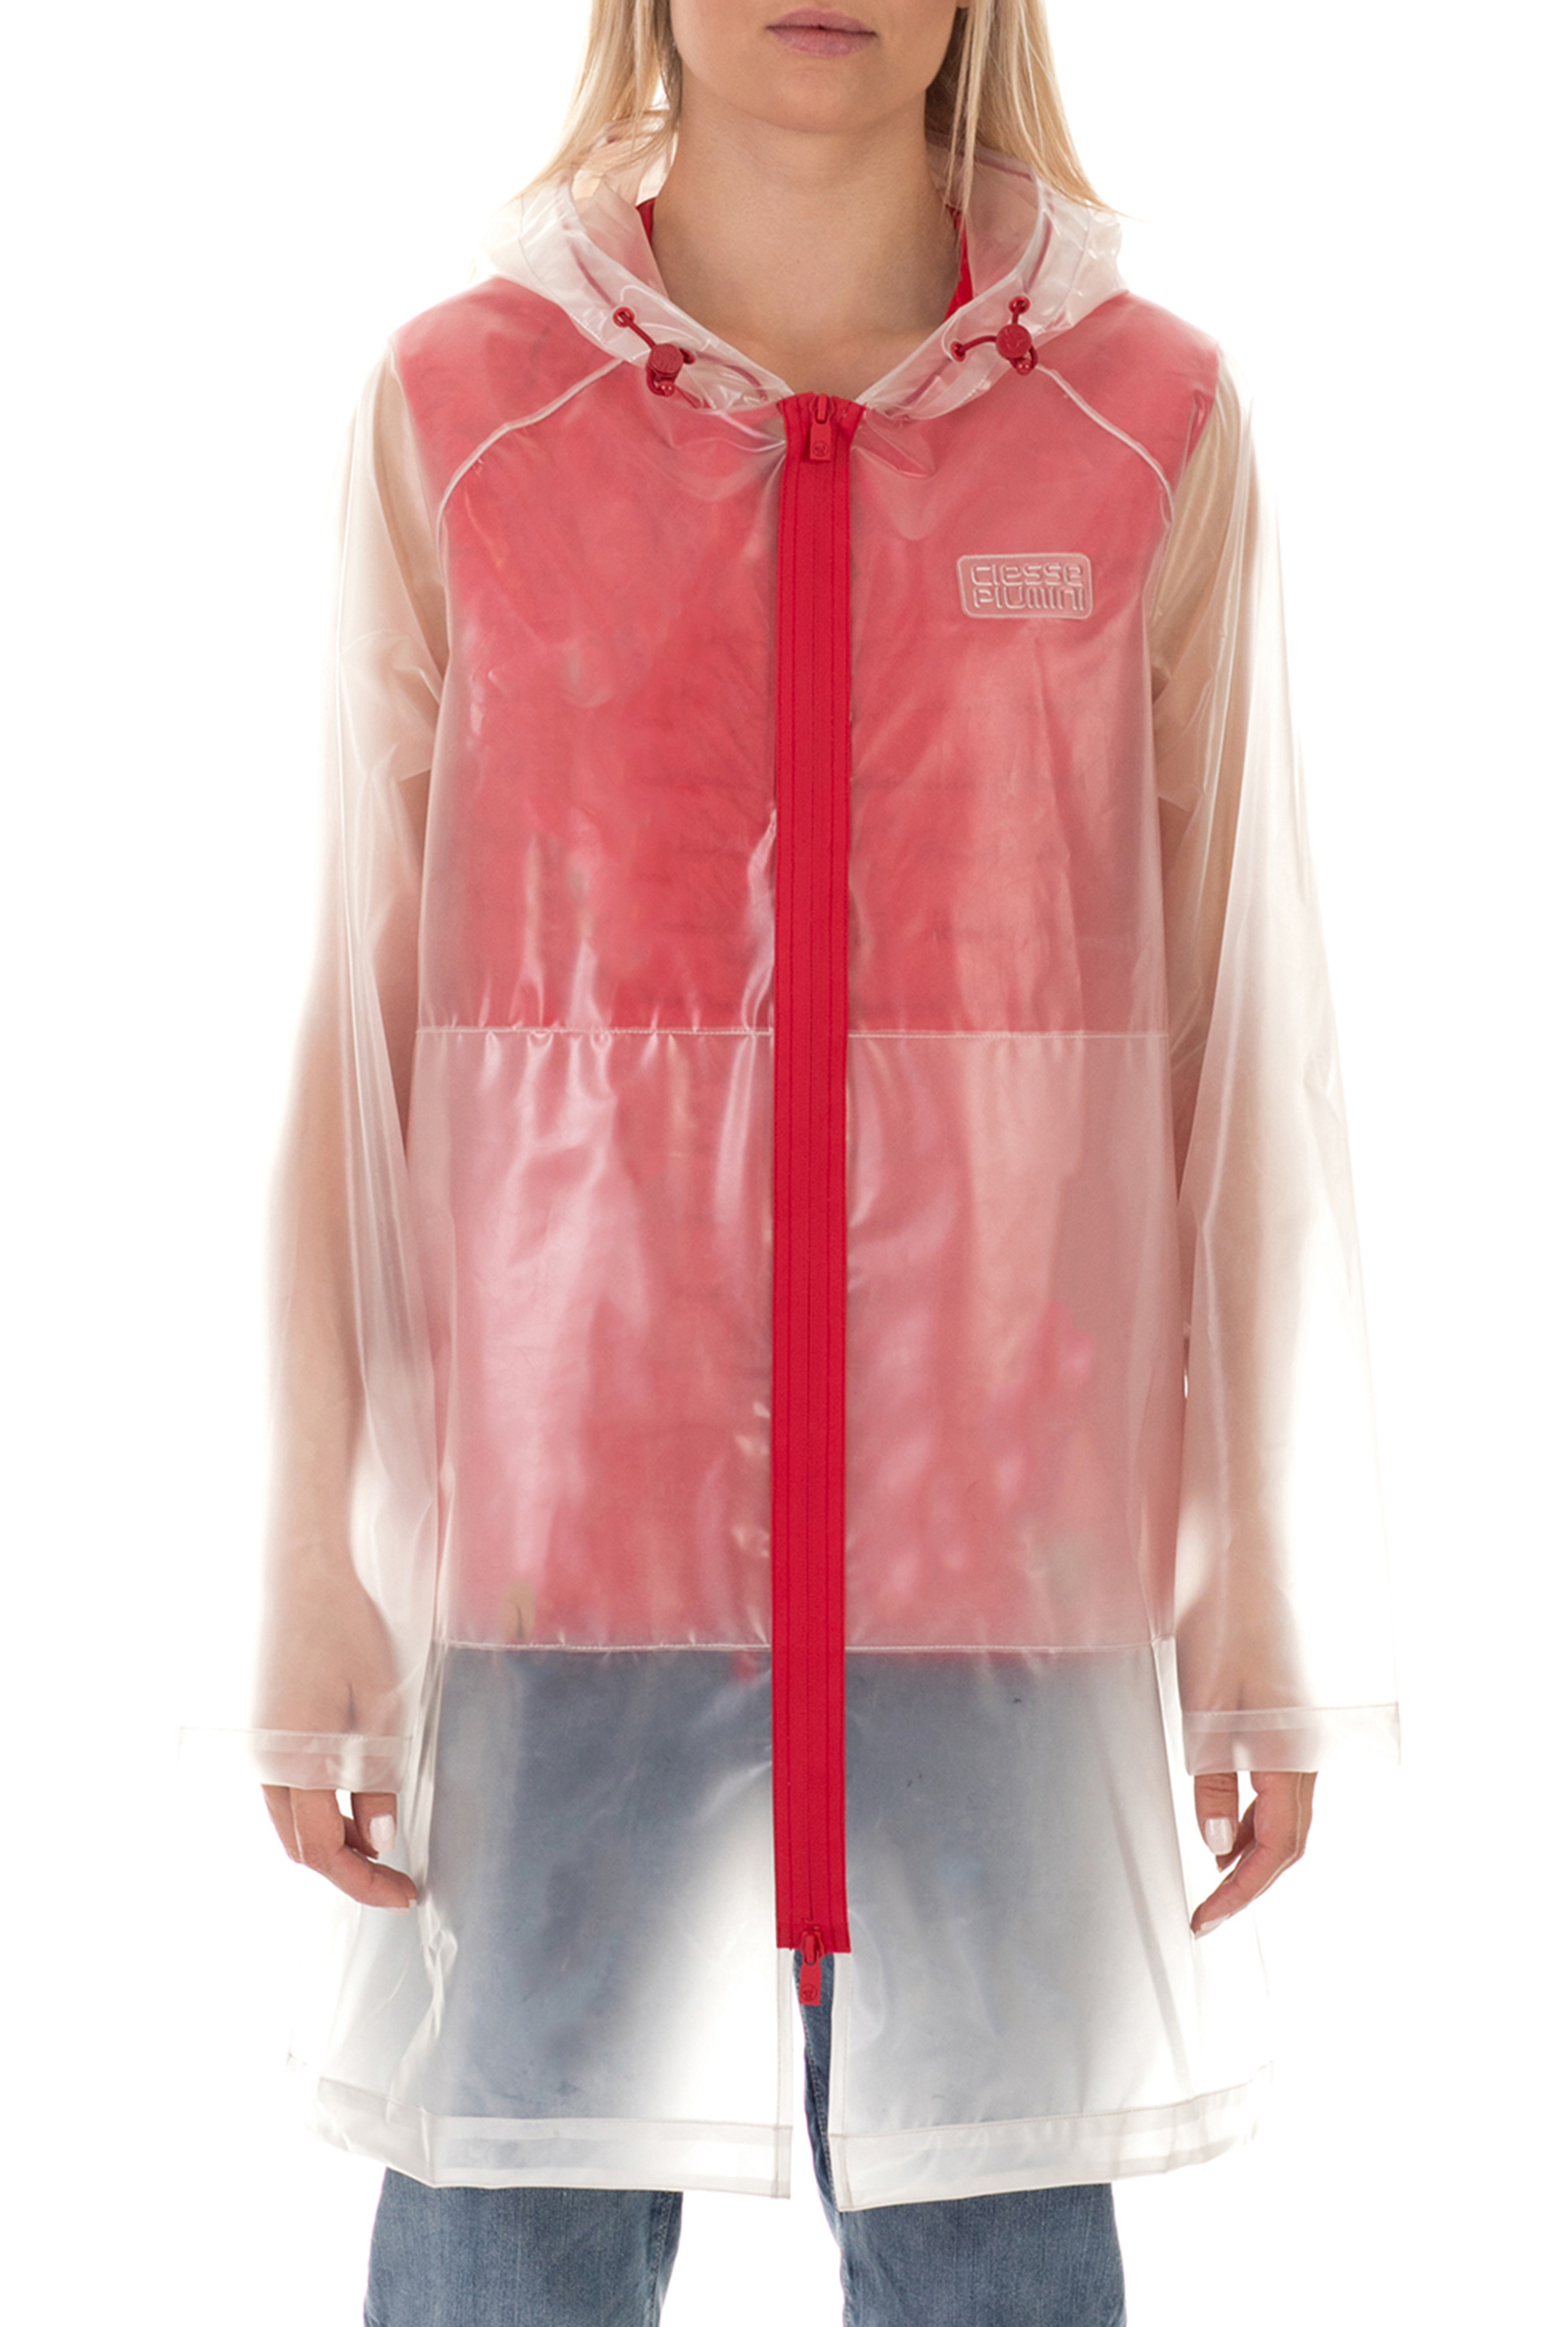 CIESSE PIUMINI – Γυναικείο αδιάβροχο jacket CIESSE PIUMINI SHARON διάφανο κόκκινο